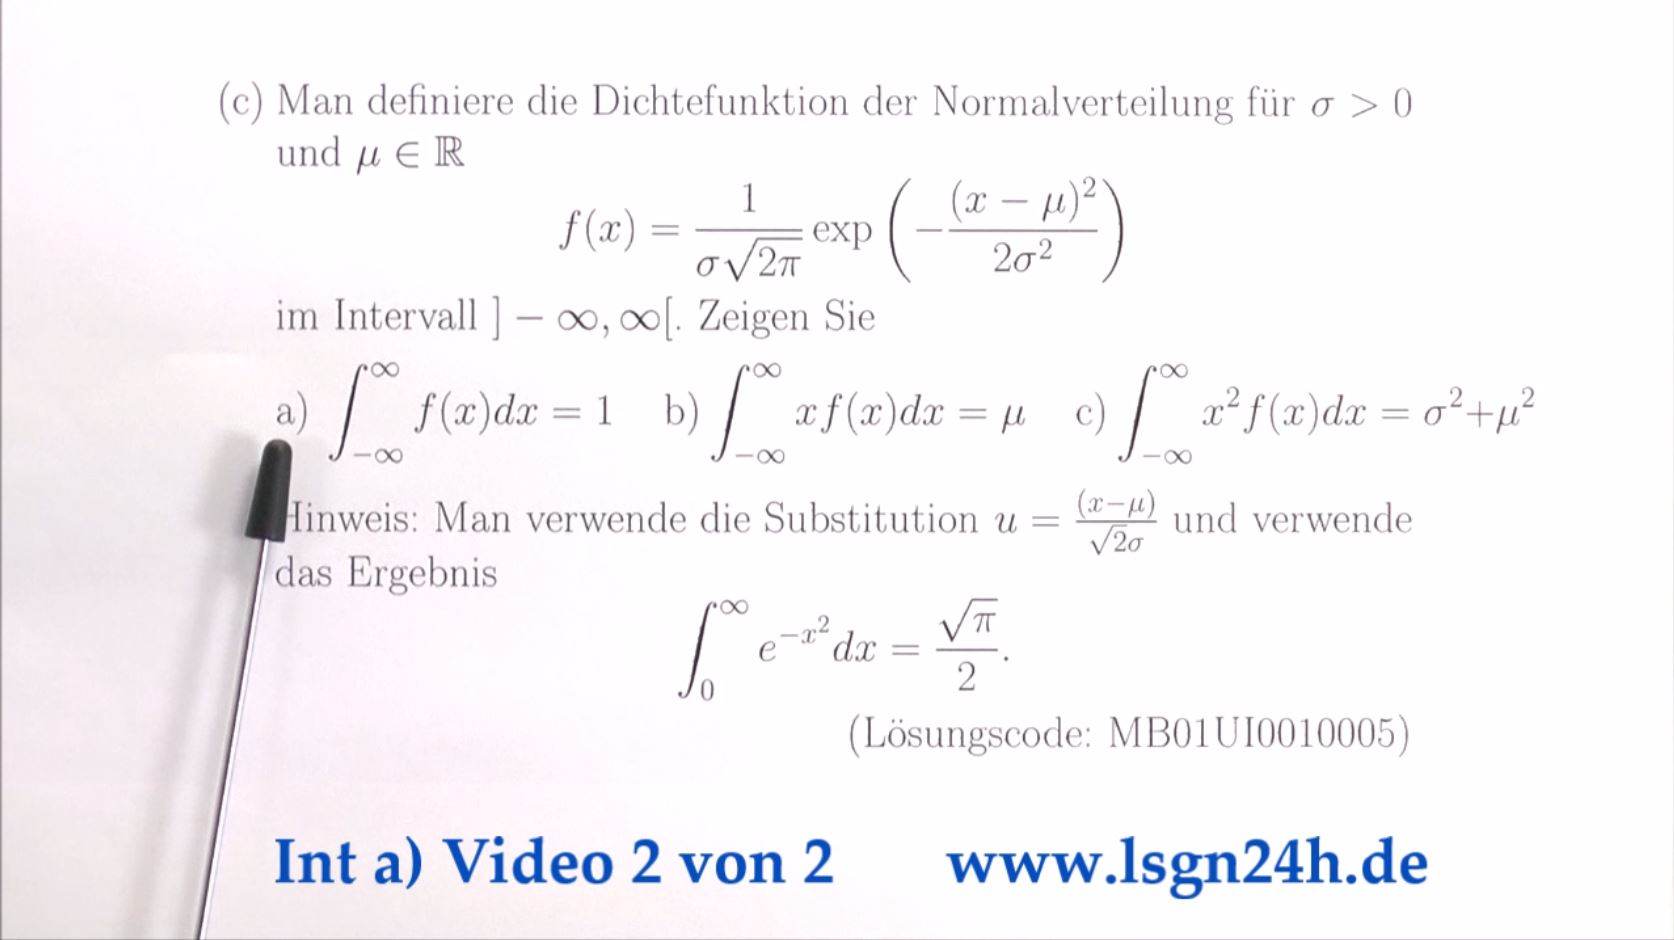 Integral über die Dichtefunktion der Normalverteilung mit Faktor 1  (2 von 2)